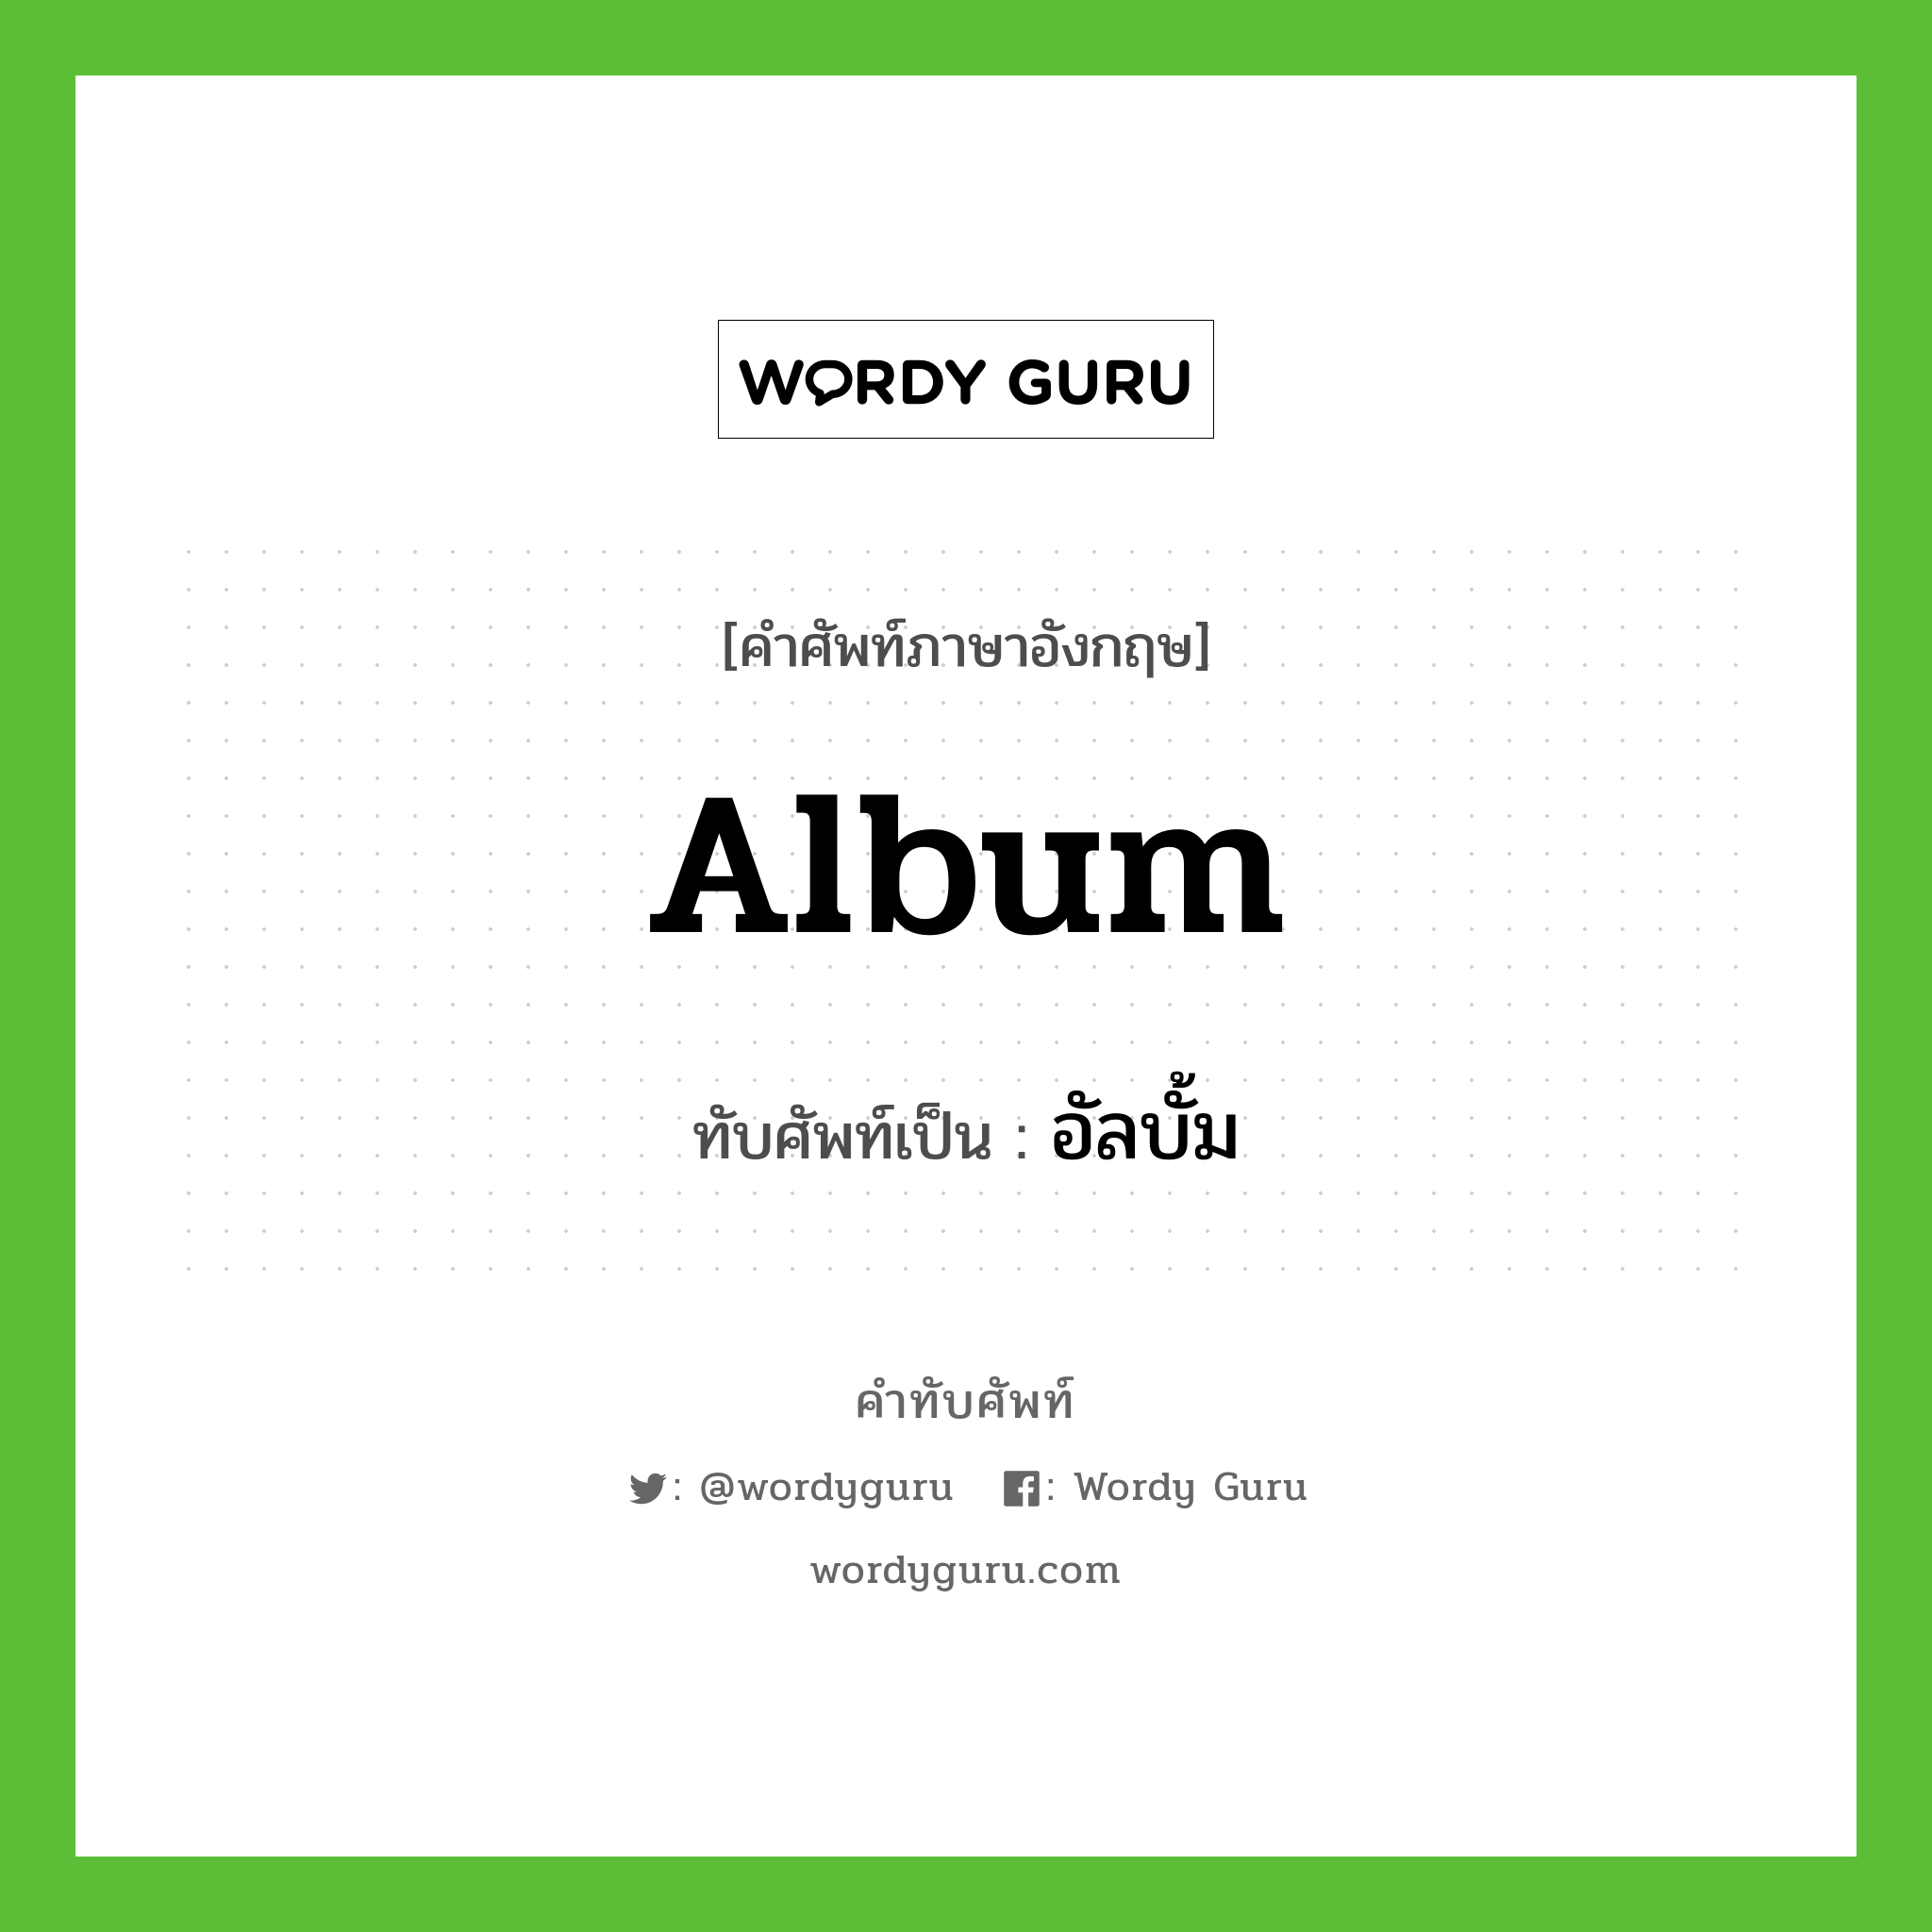 album เขียนเป็นคำไทยว่าอะไร?, คำศัพท์ภาษาอังกฤษ album ทับศัพท์เป็น อัลบั้ม